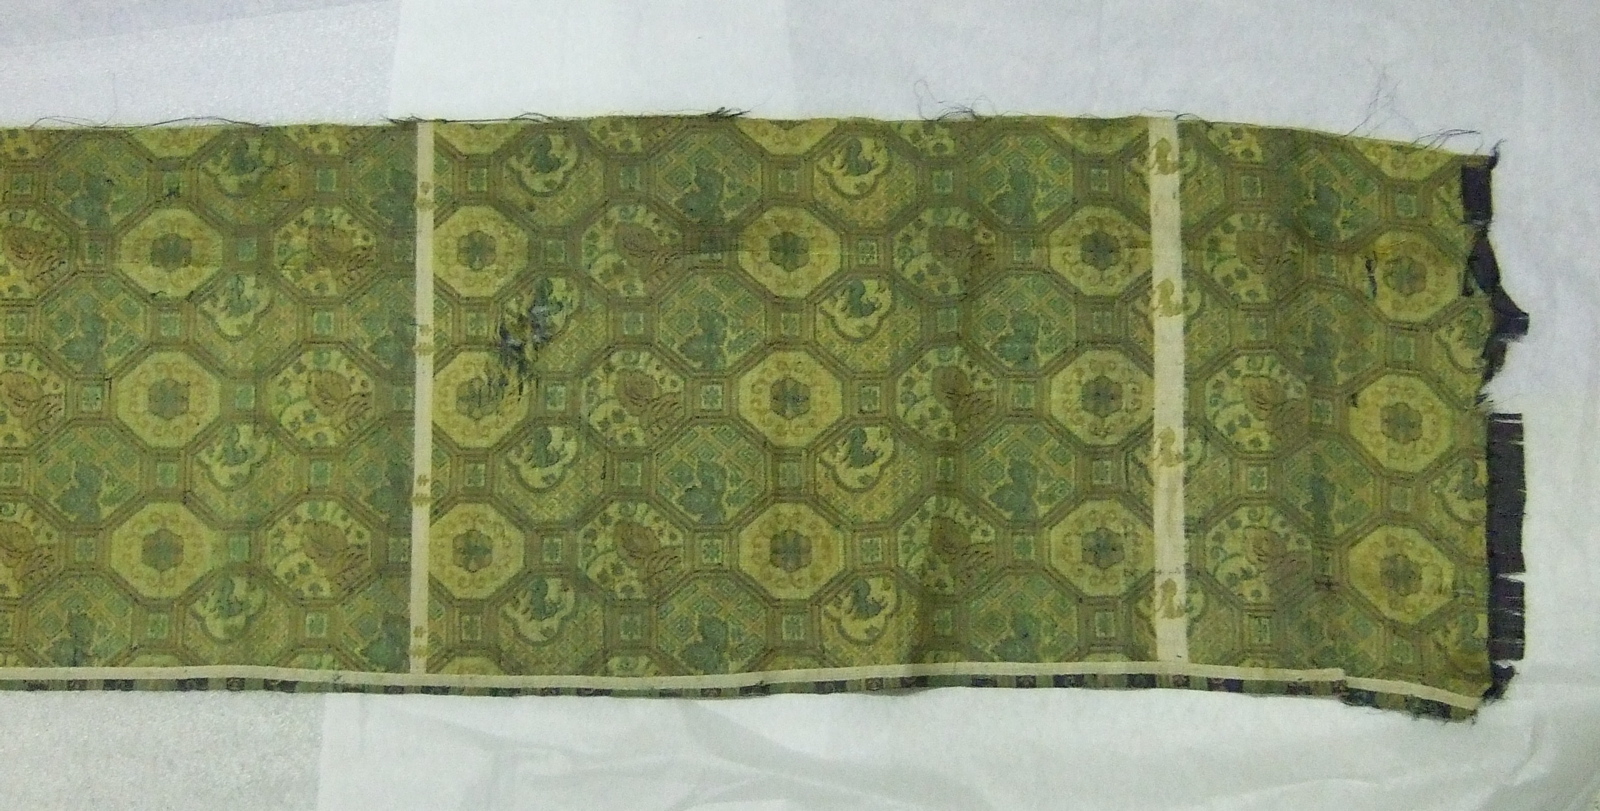 Très long morceau de tissu asiatique, motifs de médaillons alternés vert doré sur fond bleu. (2/2) (titre factice)